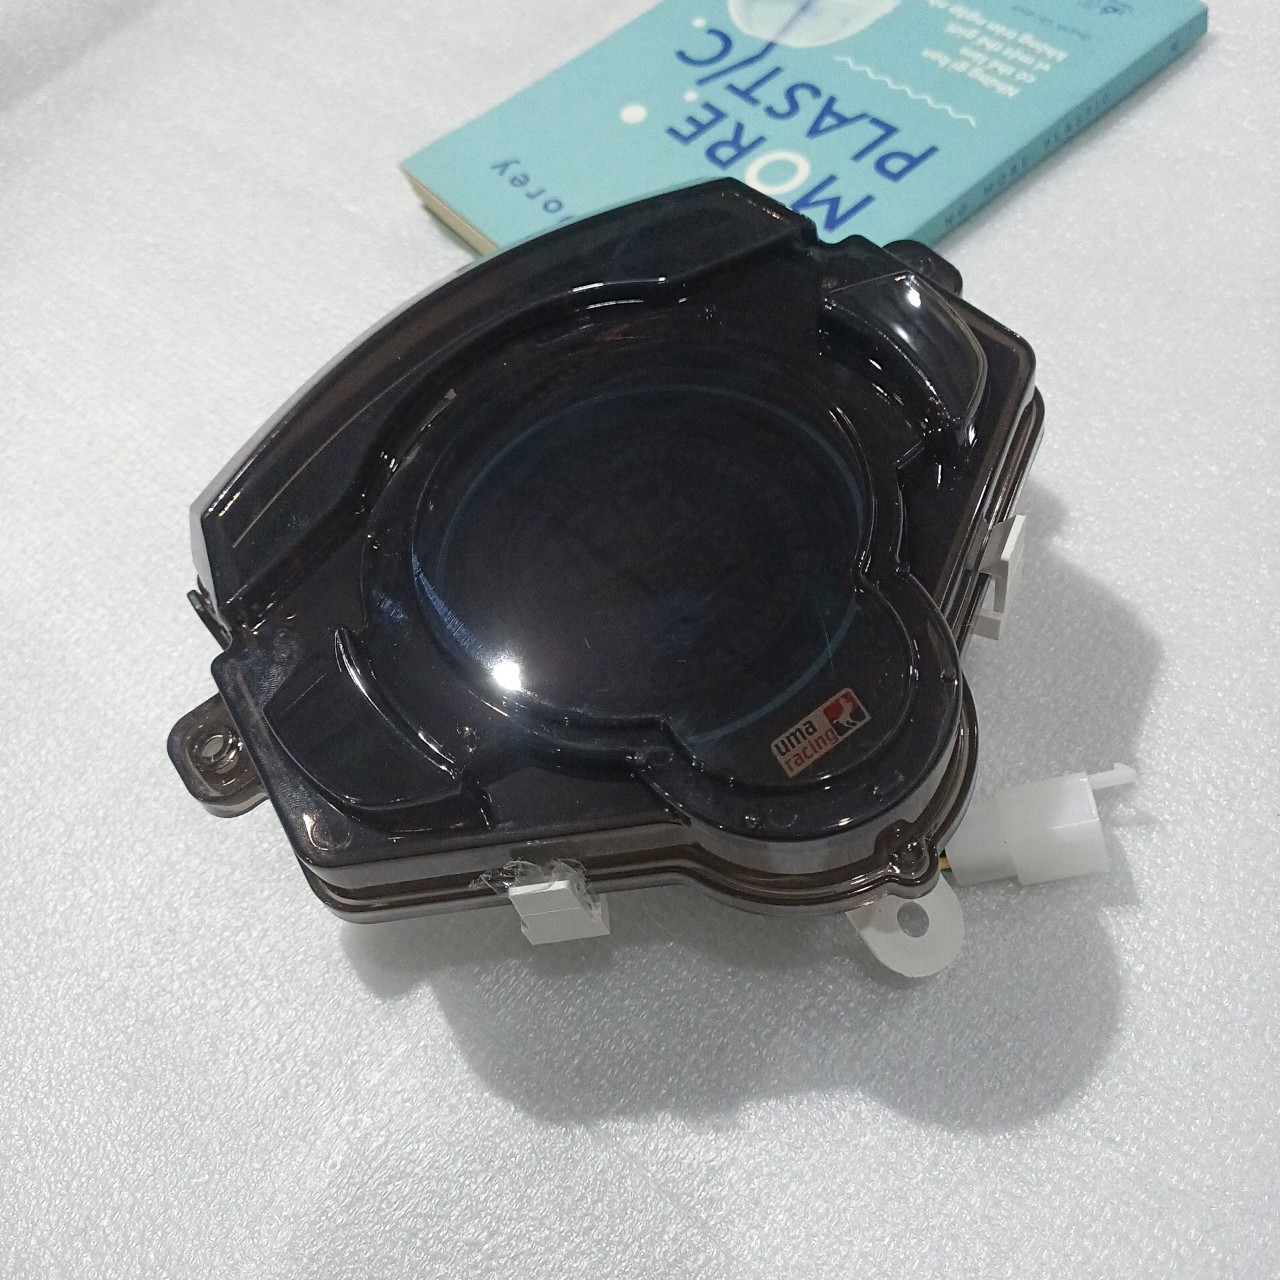 Đồng hồ điện tử Plus gắn cho xe Exciter 135 - TKB8847